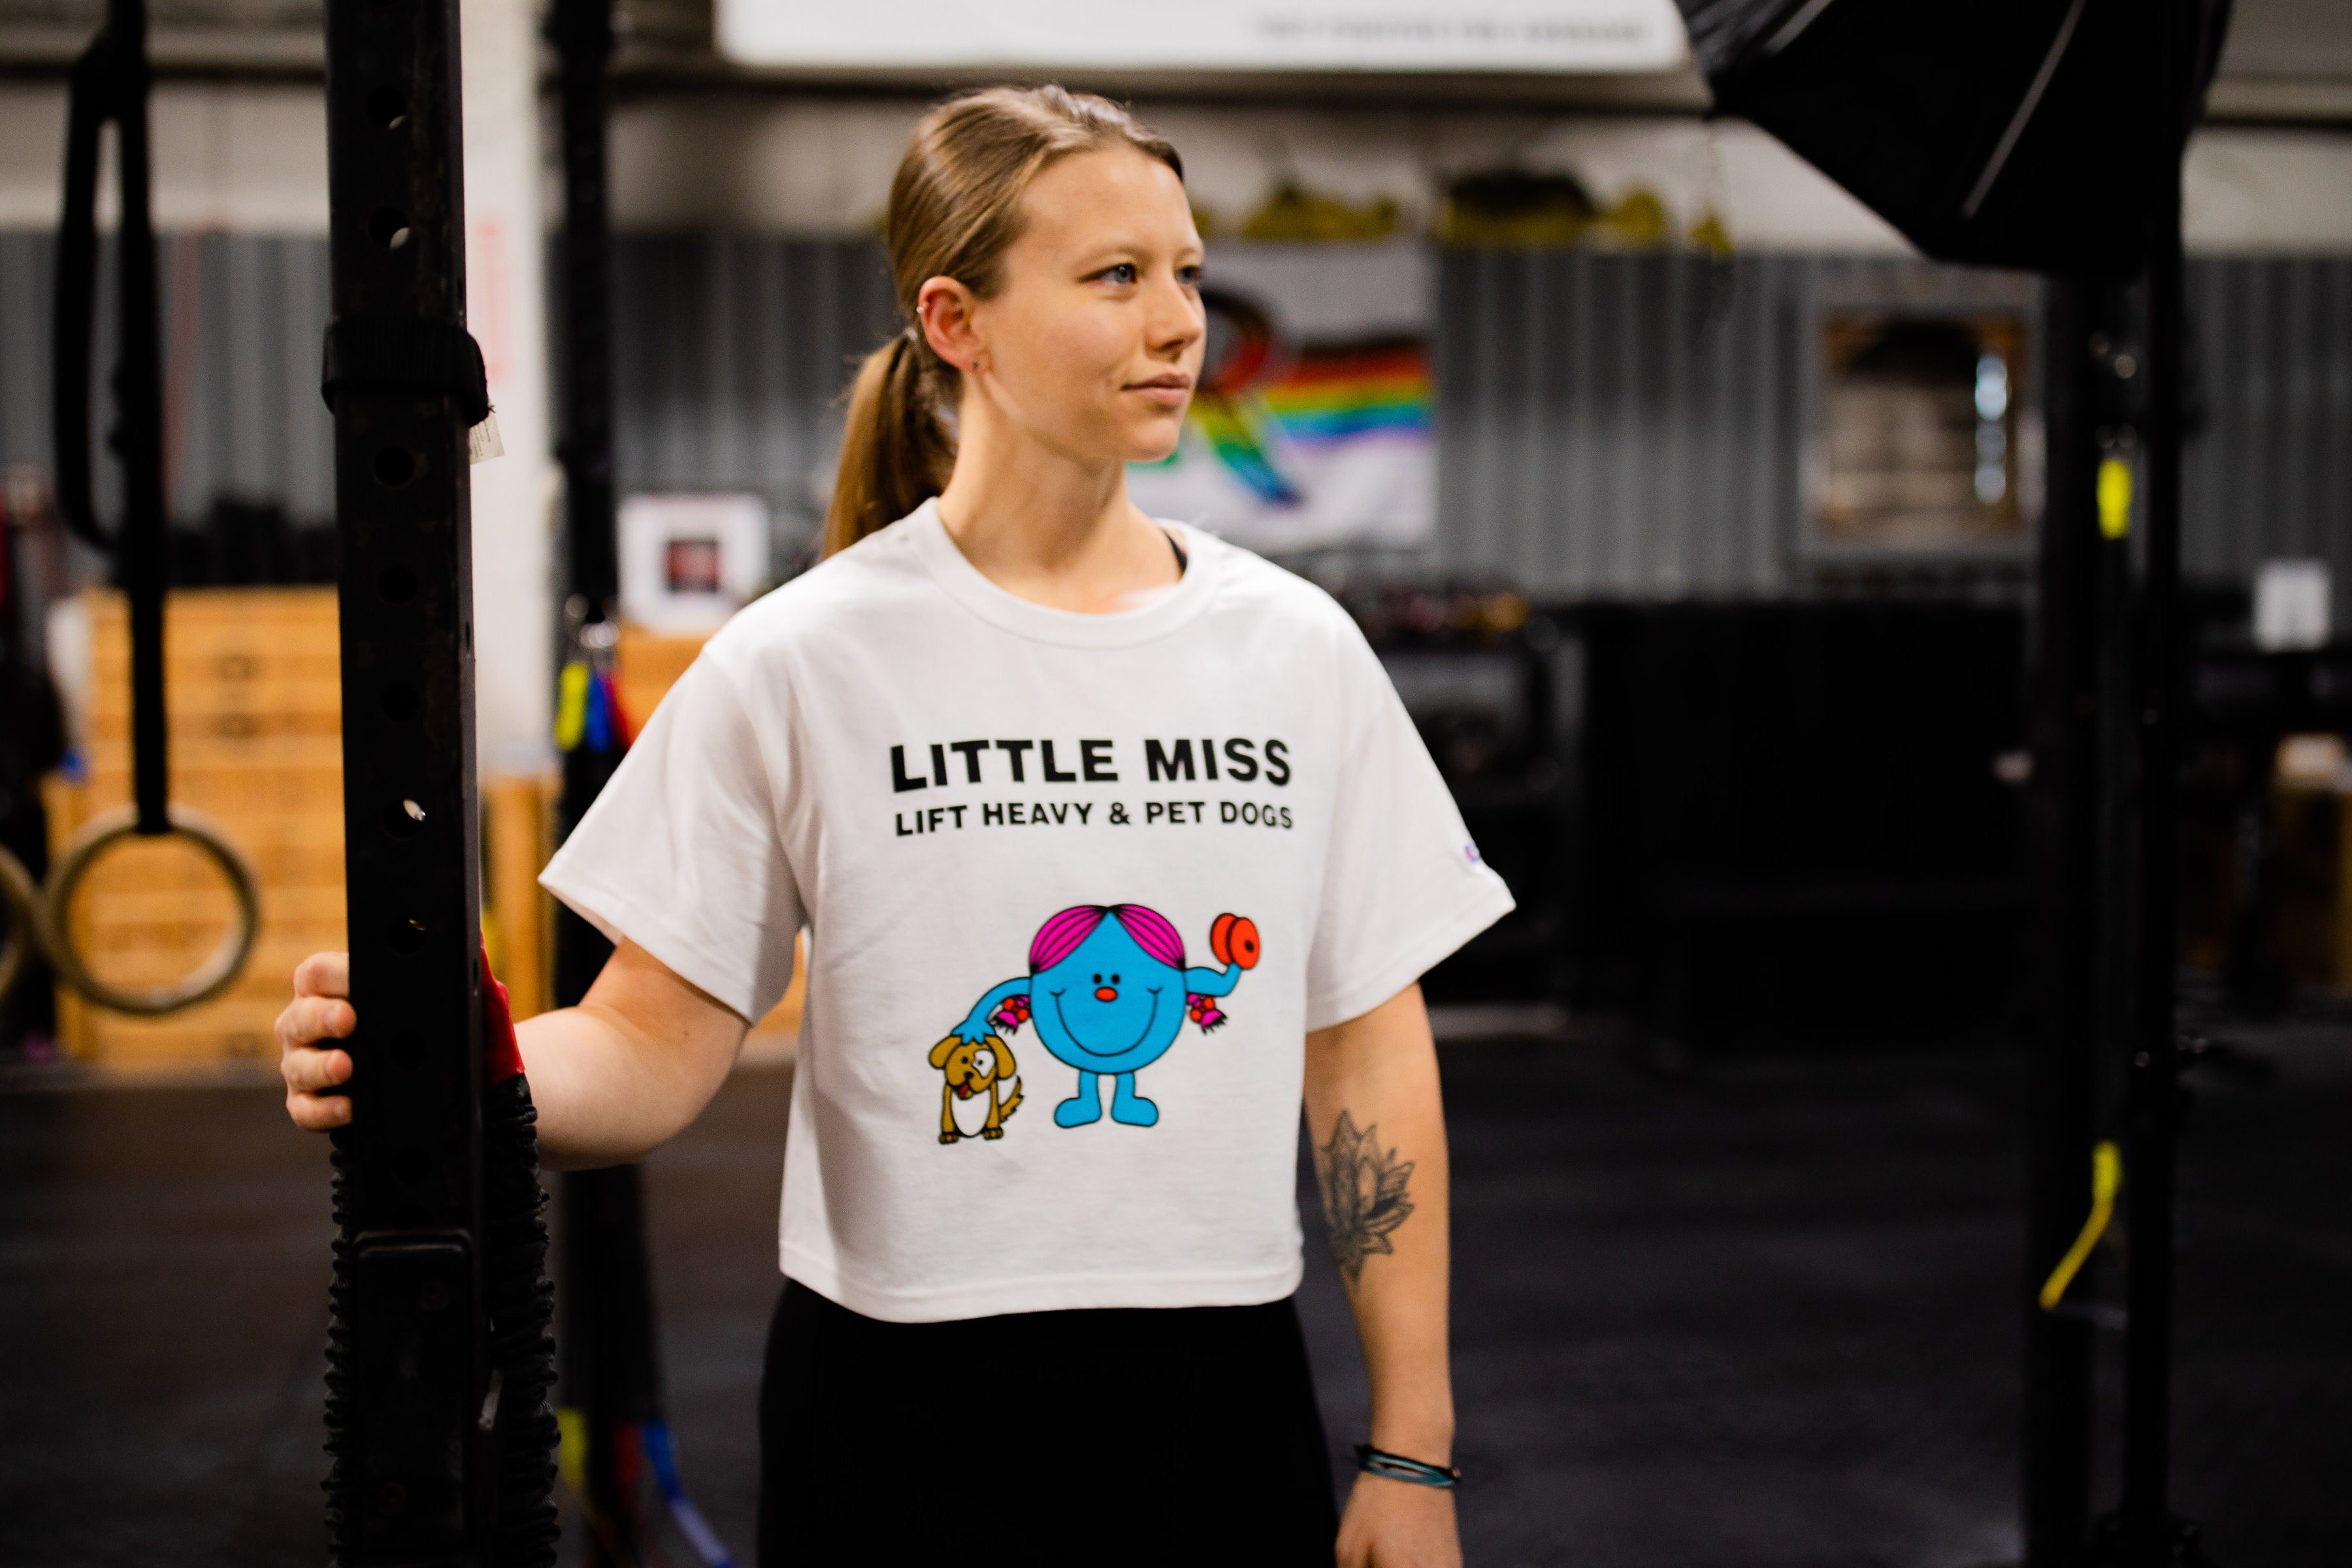 "LITTLE MISS Lift Heavy & Pet Dogs" - Women's Champion Crop